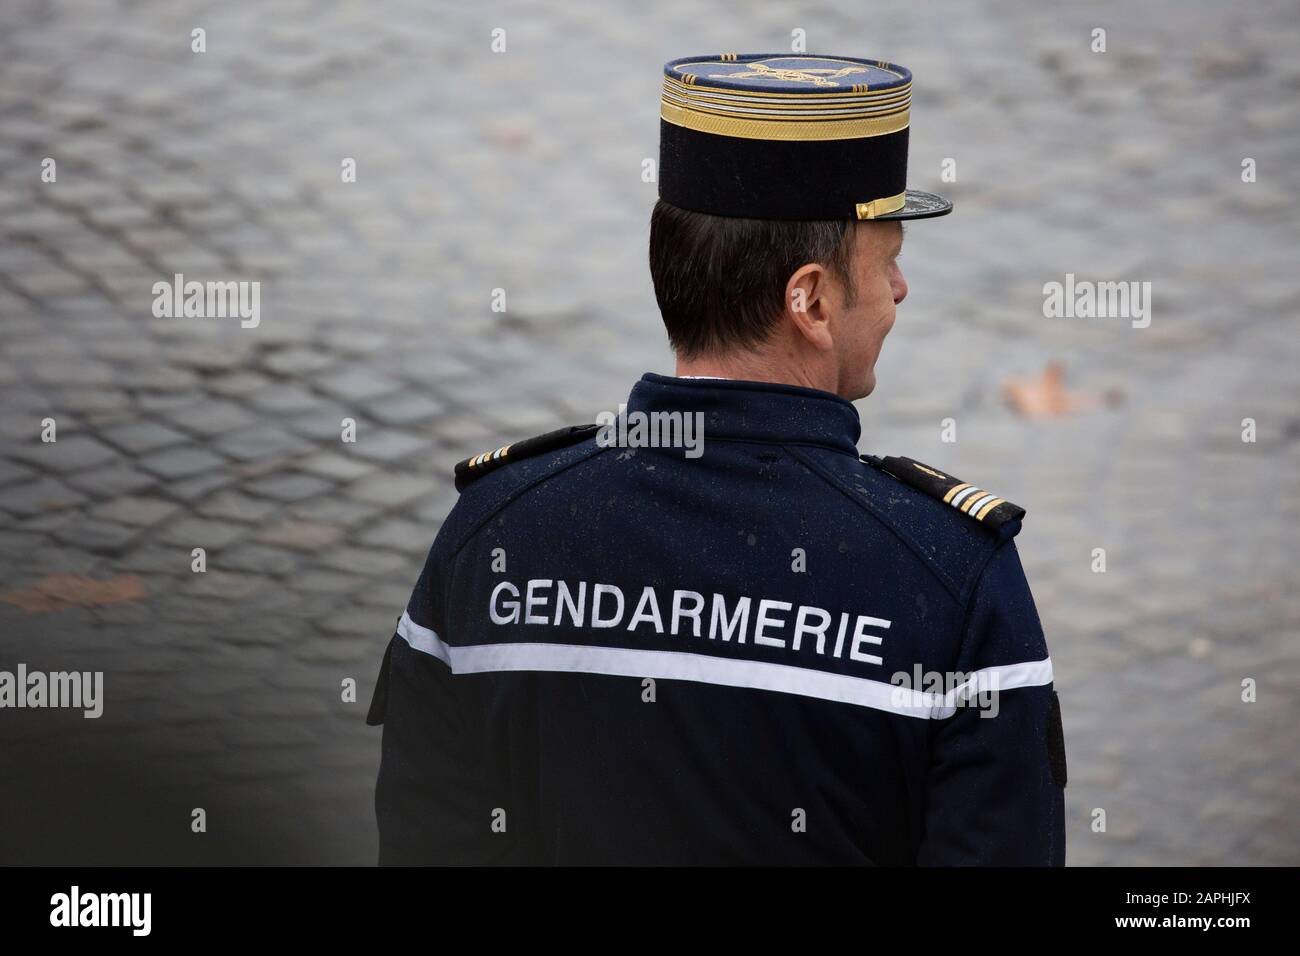 Polizei bei der 101. Jahrfeier des Waffenstillstands von 1918 am Triumphbogen. Paris, 11.11.2019 Stock Photo